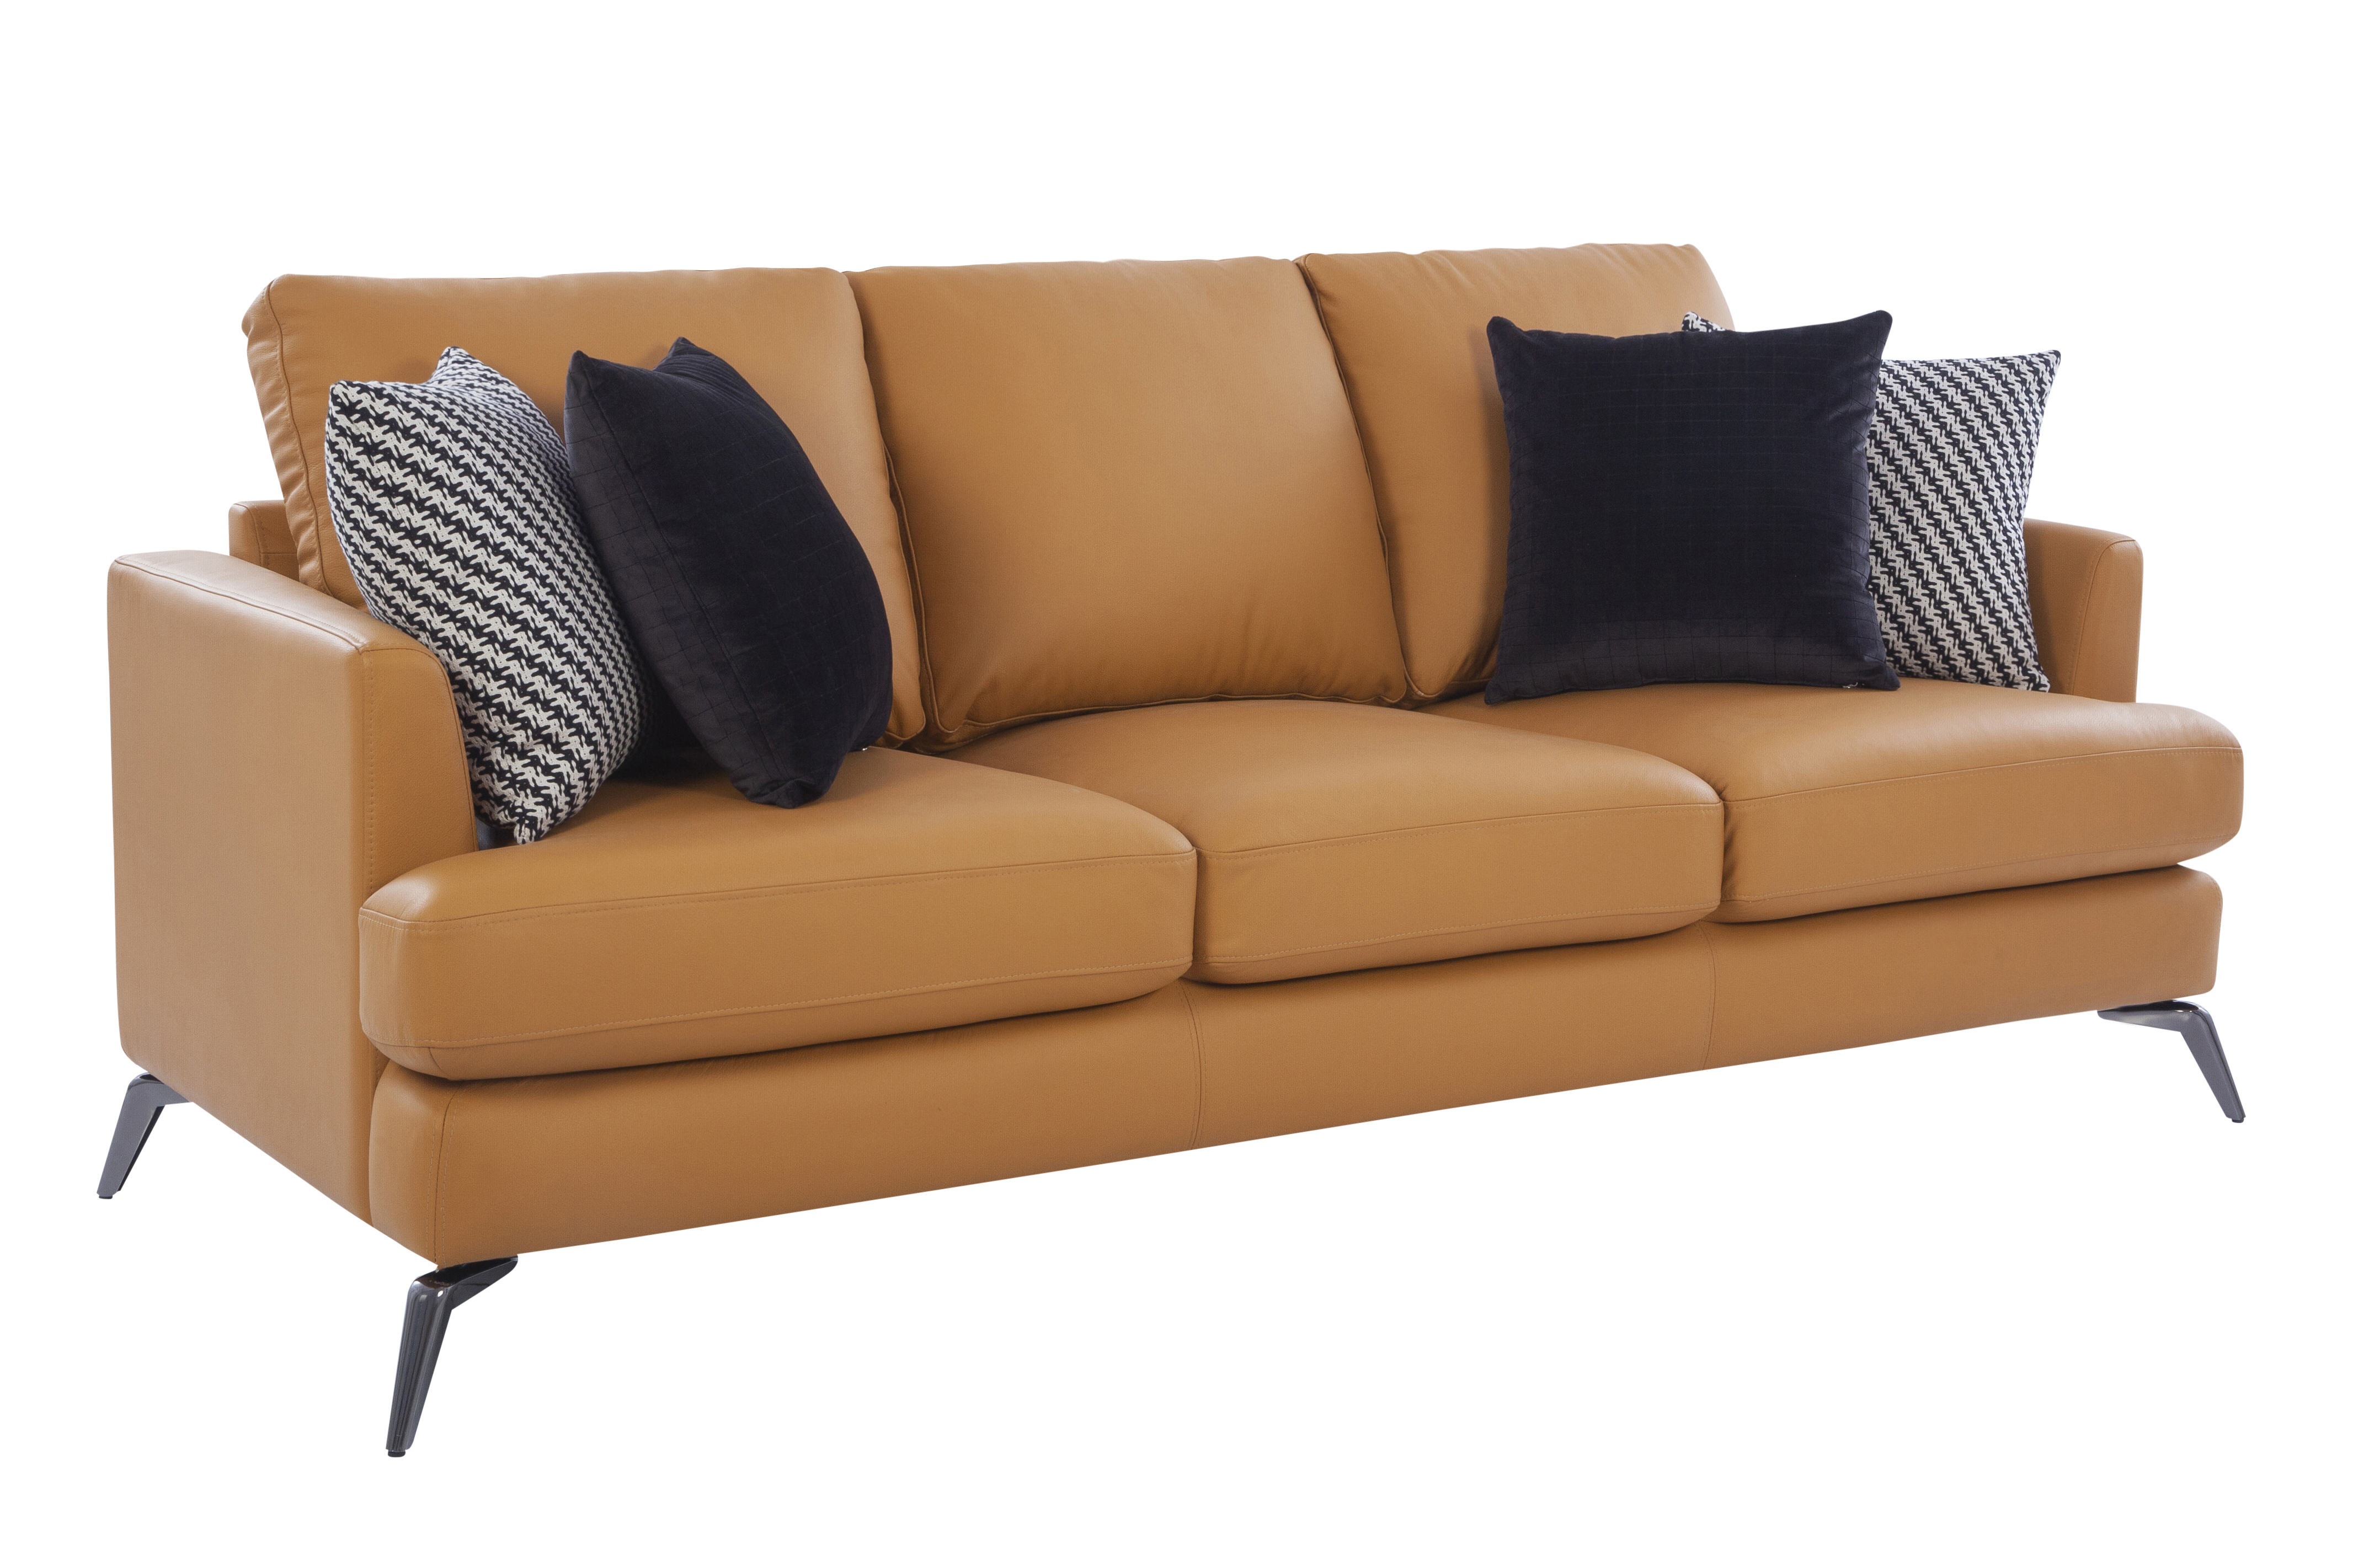 Paris Leather Sofa set